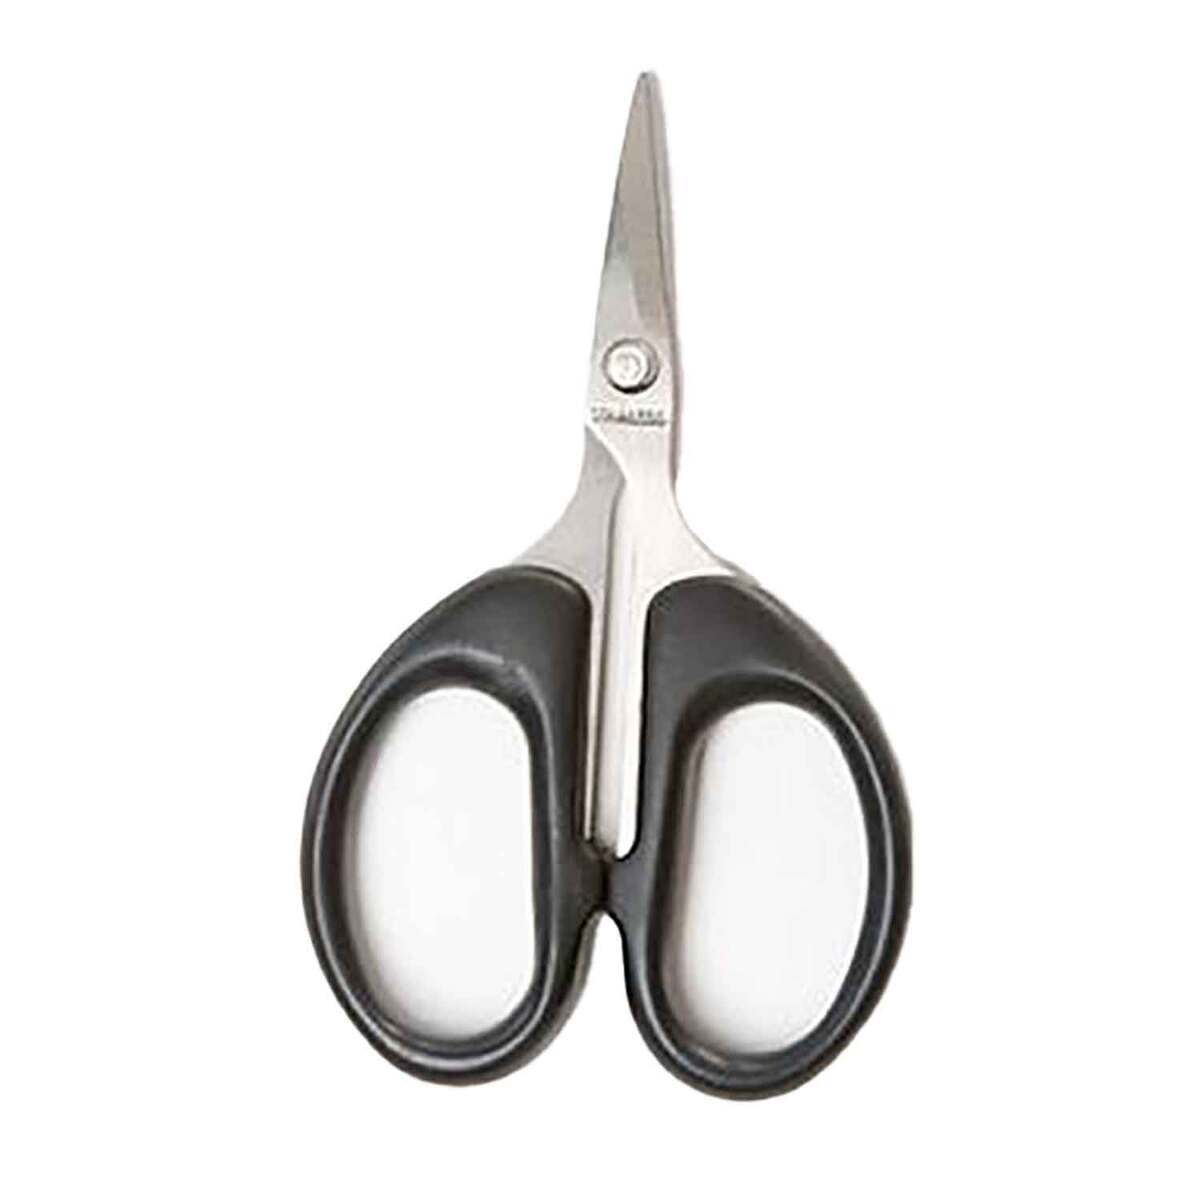 https://www.sportsmans.com/medias/griffin-all-purpose-non-serrated-utility-scissors-408038-1.jpg?context=bWFzdGVyfGltYWdlc3wzMzQ0NHxpbWFnZS9qcGVnfGg1NS9oNjQvMTA1NTU4NTA5MTU4NzAvNDA4MDM4LTFfYmFzZS1jb252ZXJzaW9uRm9ybWF0XzEyMDAtY29udmVyc2lvbkZvcm1hdHxmYmM0MDgyNTcxMjhhY2ZkYTZlOWIyZTY0M2Q5NzQ4ZWY4ZGRkZmQ1NWY0ZjMxOGFkOGMxODM3OTQ1NTQ5ZTc1